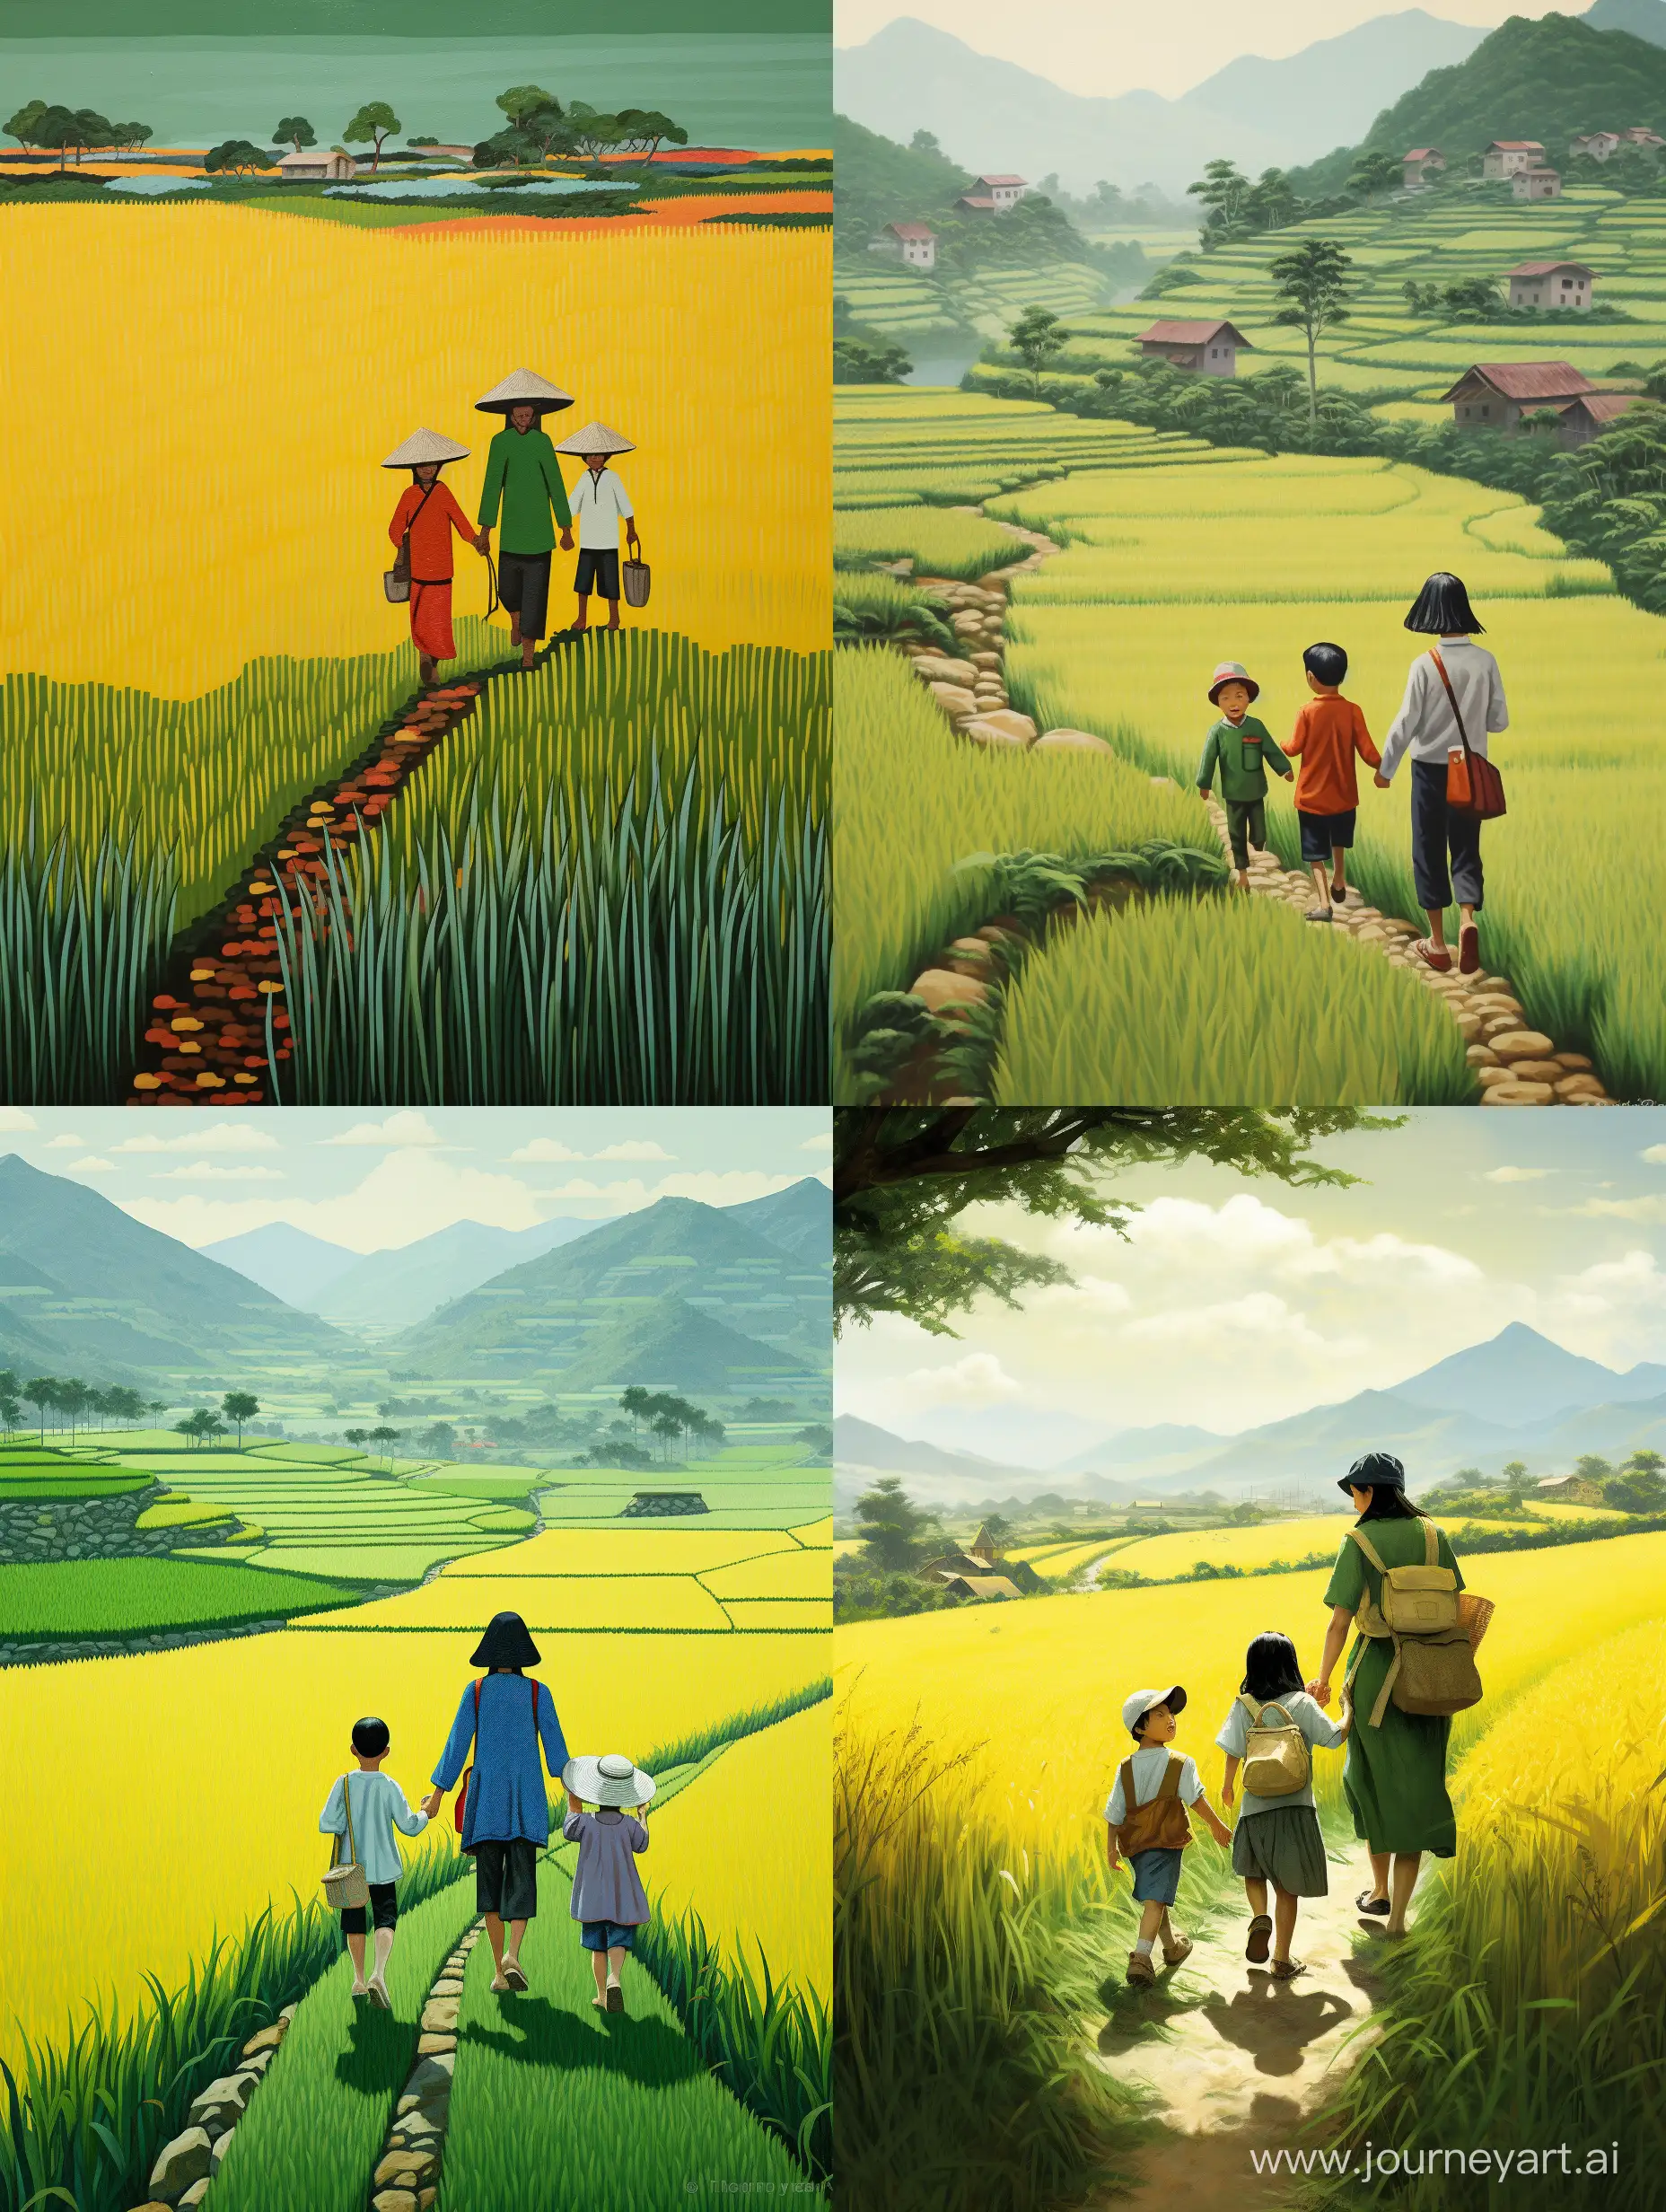 hình ảnh nông thôn phụ nữ việt nam dắt em bé trai 6 tuổi cùng mẹ đi học trên đường quê, 2 bên là cánh đồng lúa xanh vàng